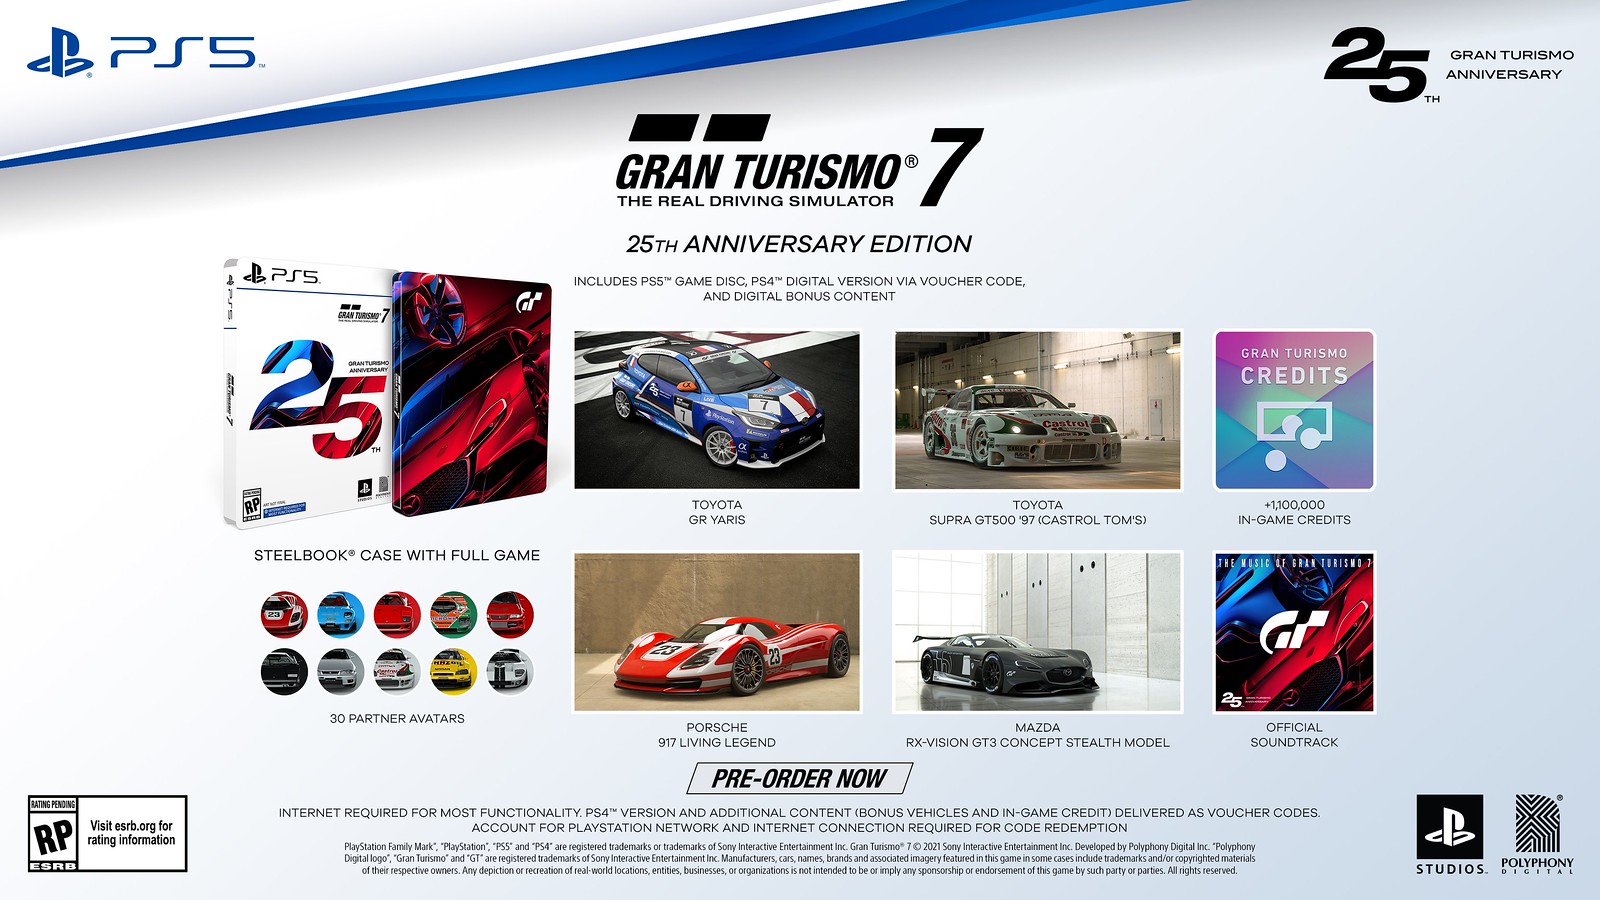 Jogo Gran Turismo 7 PS4 versão com atualização do PS5 - Mídia Física -  Disco Impecável - Videogames - Paraíso, São Paulo 1251898295